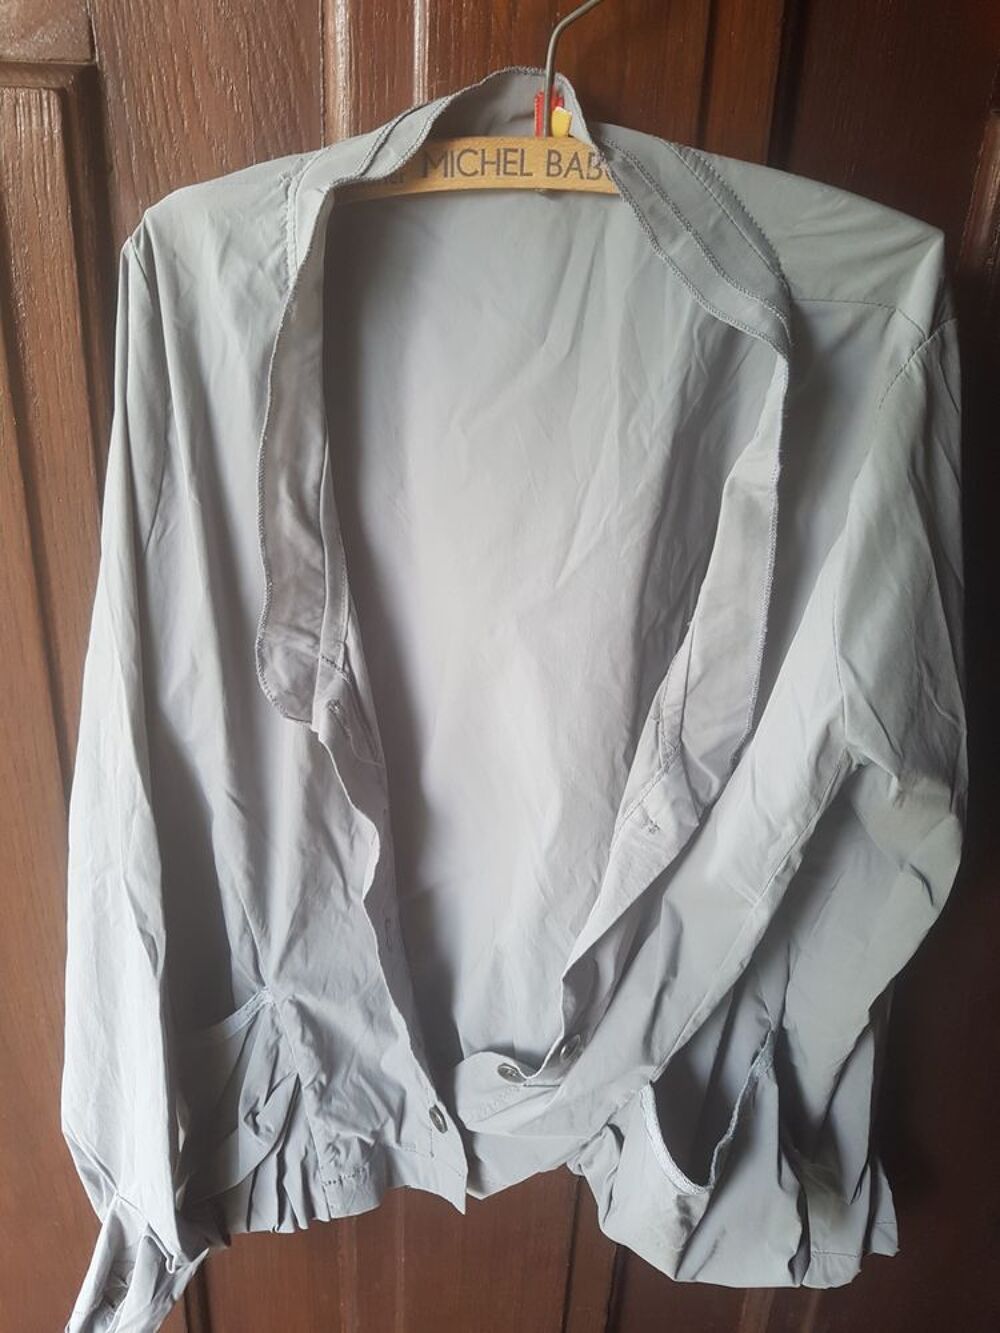 Top/veste gris(e) vintage de bonne qualit&eacute;
Vtements